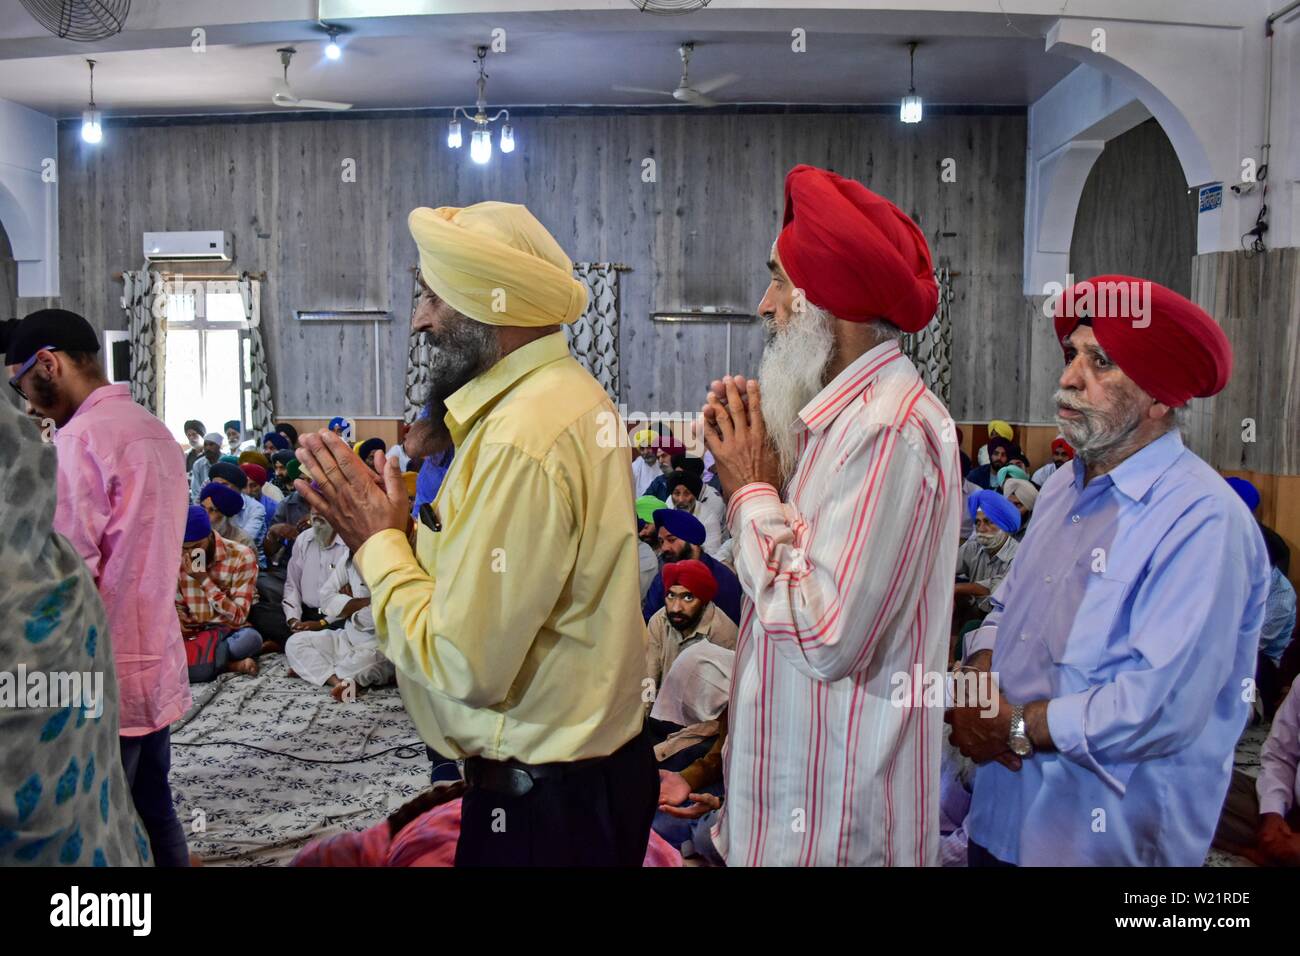 Les dévots se prosterner devant payer à un temple Sikh lors d'un anniversaire de naissance de la sixième gourou, Hargobind Singh à Srinagar.Les Sikhs dans tout le pays célèbrent l'anniversaire de la naissance de leur sixième gourou, Hargobind Singh, vendredi. La célébration a eu lieu en grande pompe et montrer à un temple Sikh principal ici à Srinagar. Banque D'Images